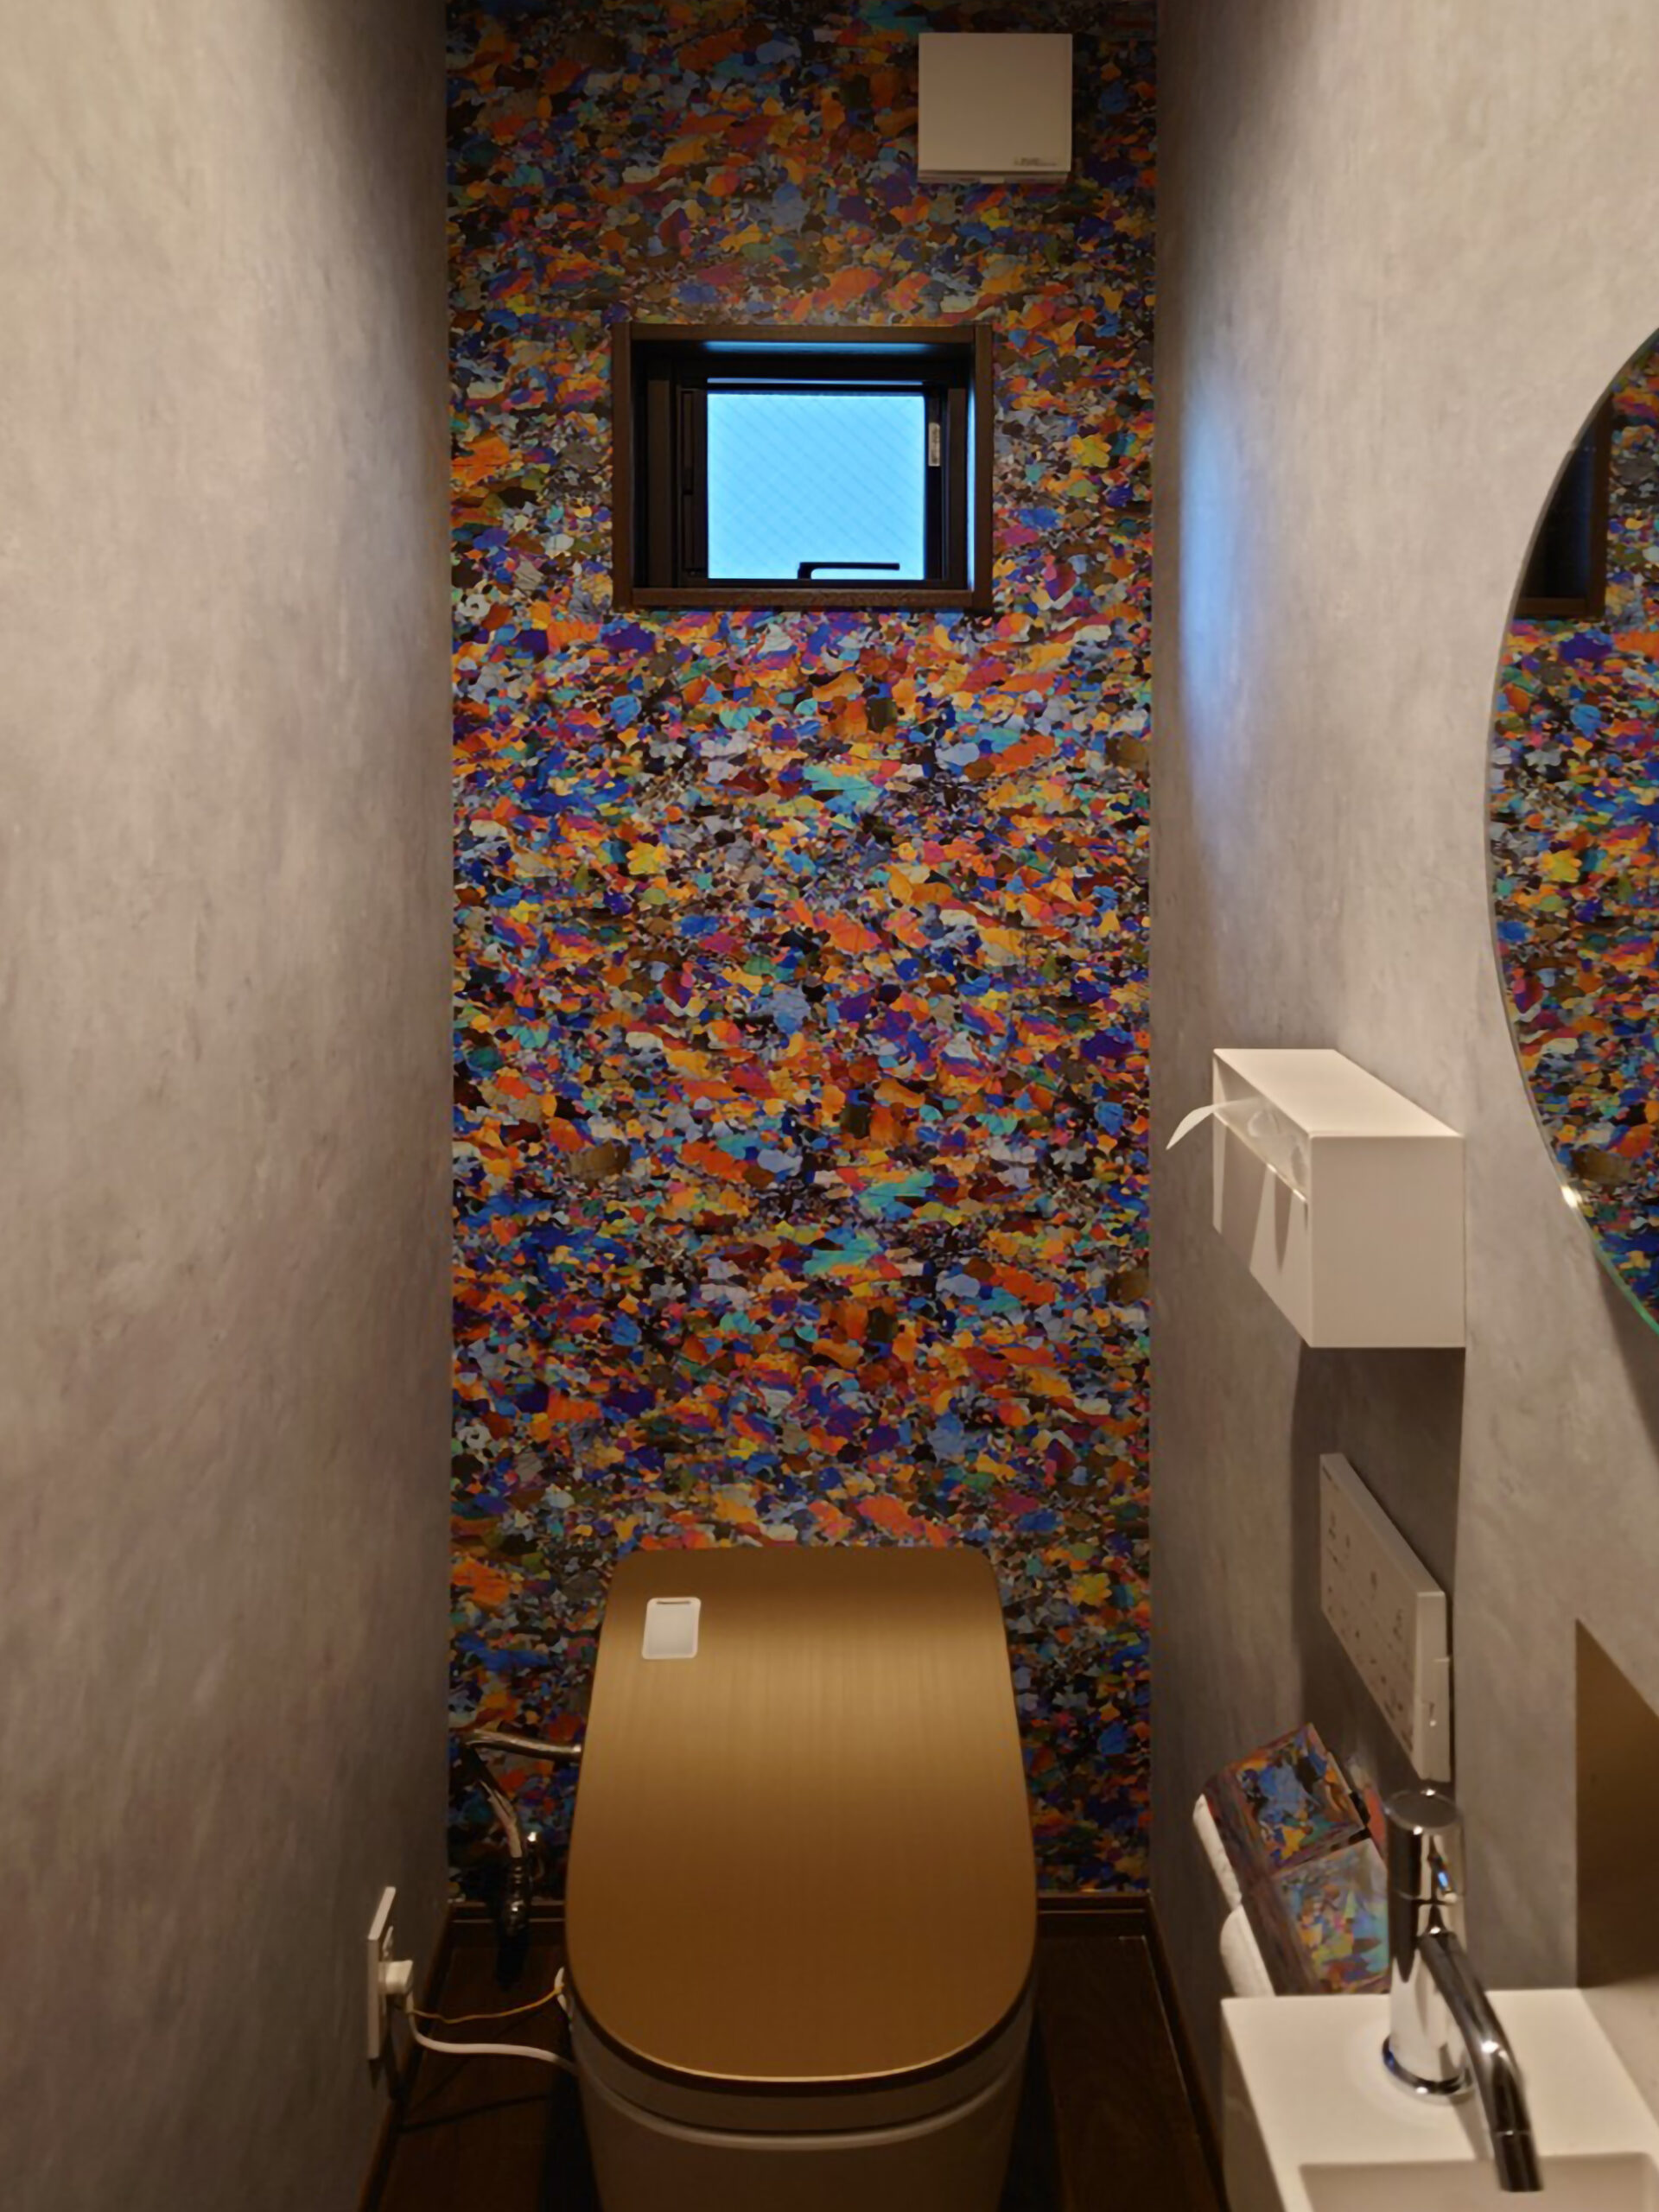 富山県高岡市にある飲食店舗のお手洗いに施工した、岩石薄片の顕微鏡写真をもとに制作された色鮮やかで緻密なデザイン「ダンかんらん岩 / CBGM006」の壁紙